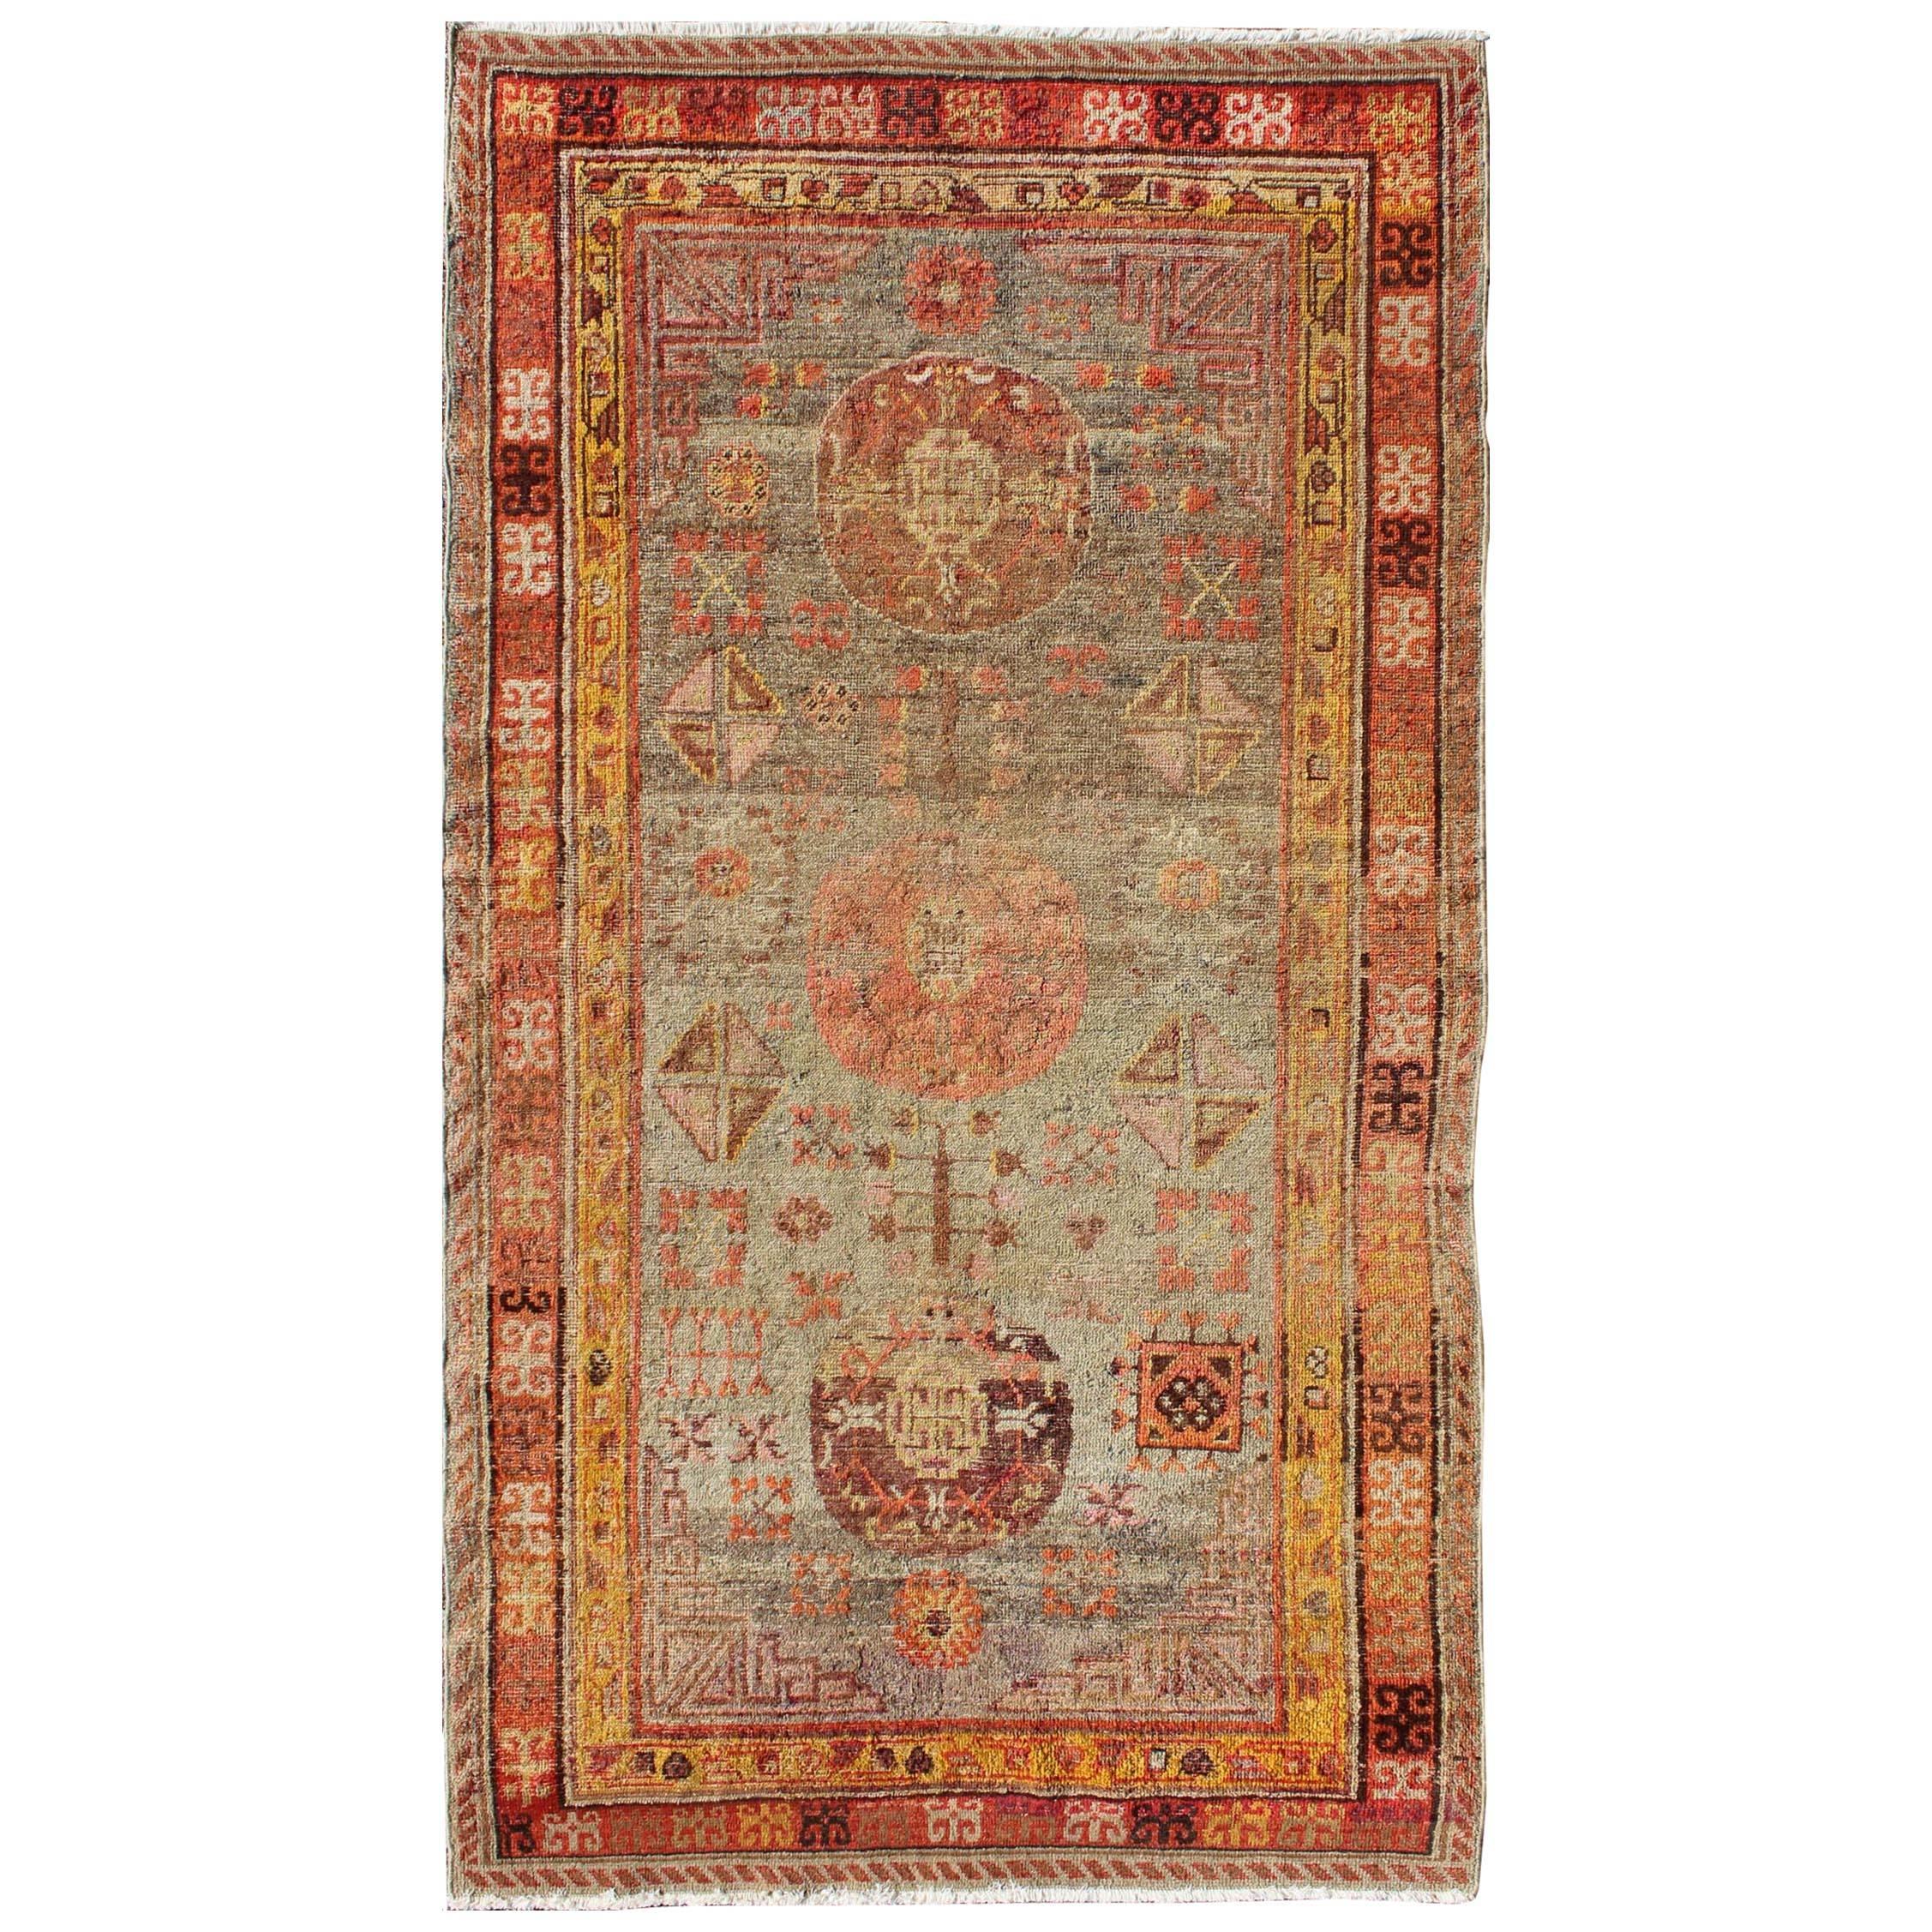 Antiker Khotan-Teppich aus Zentralasien mit floralen Geometrien